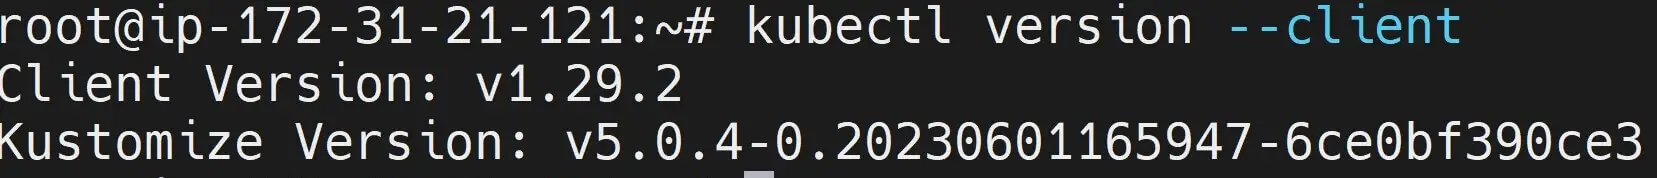 Install Kubectl on Ubuntu 20.04|22.04 using Kubernetes apt Repository